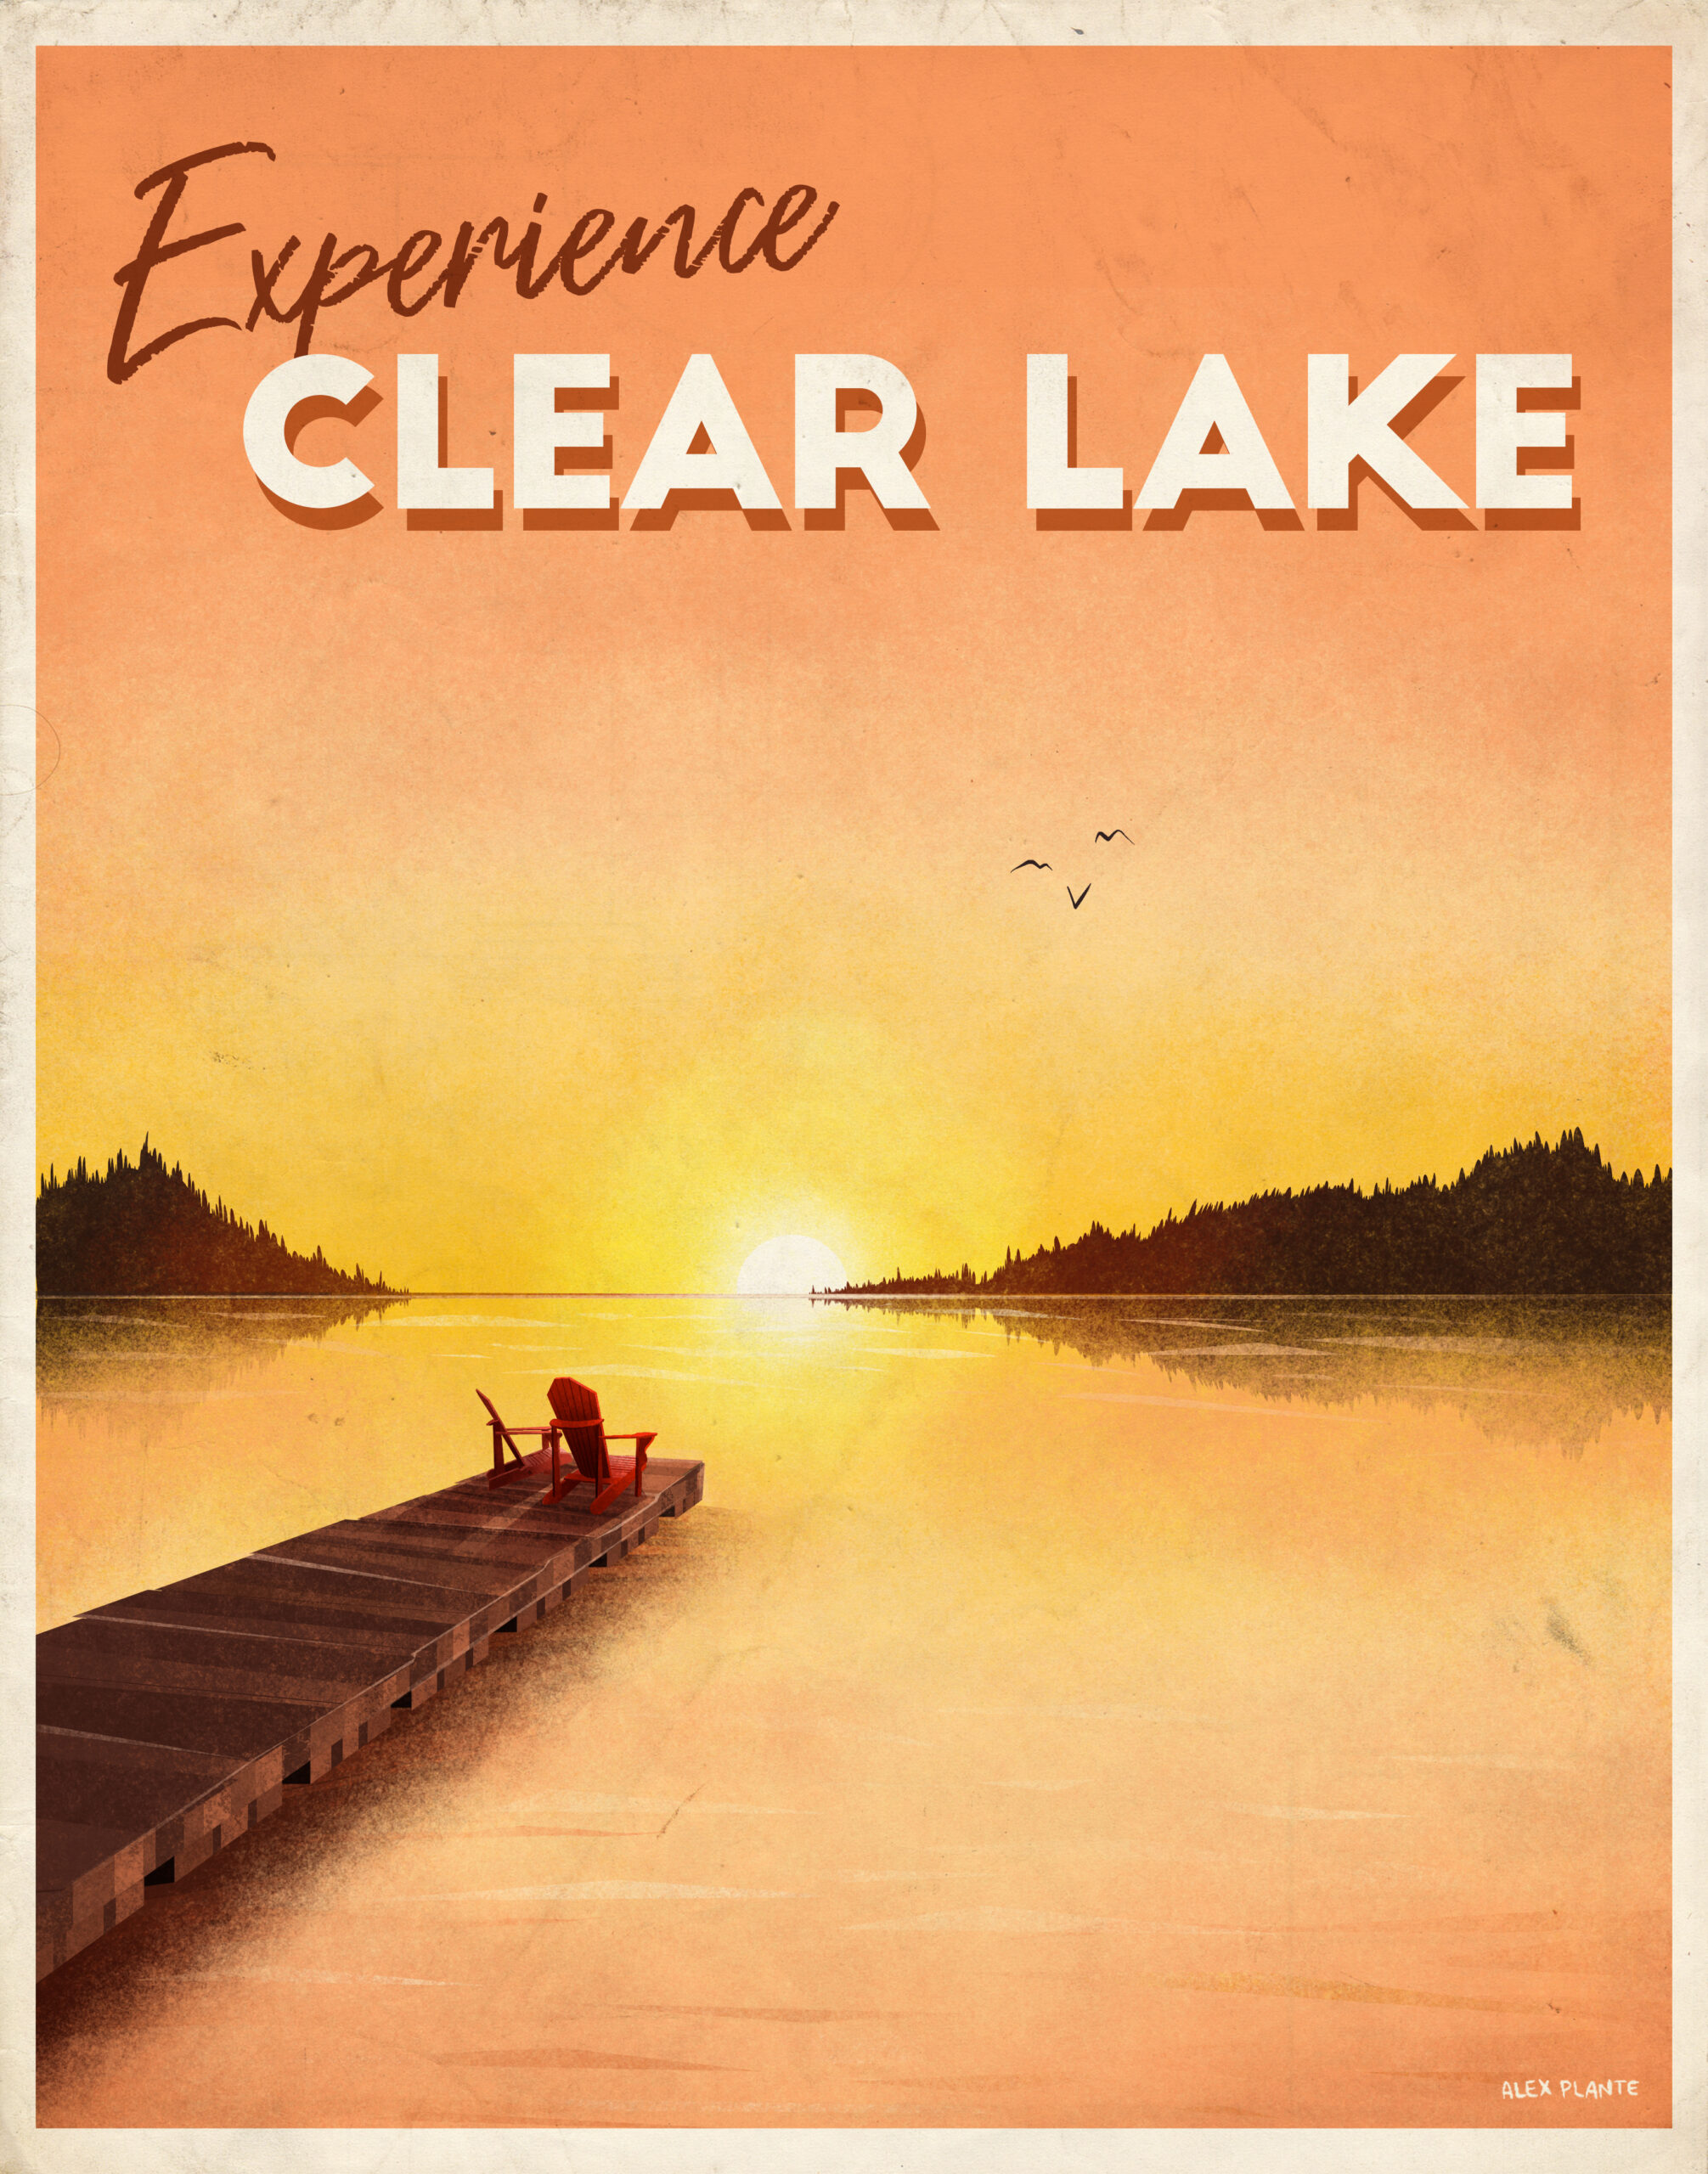 Clear Lake Manitoba lupon.gov.ph